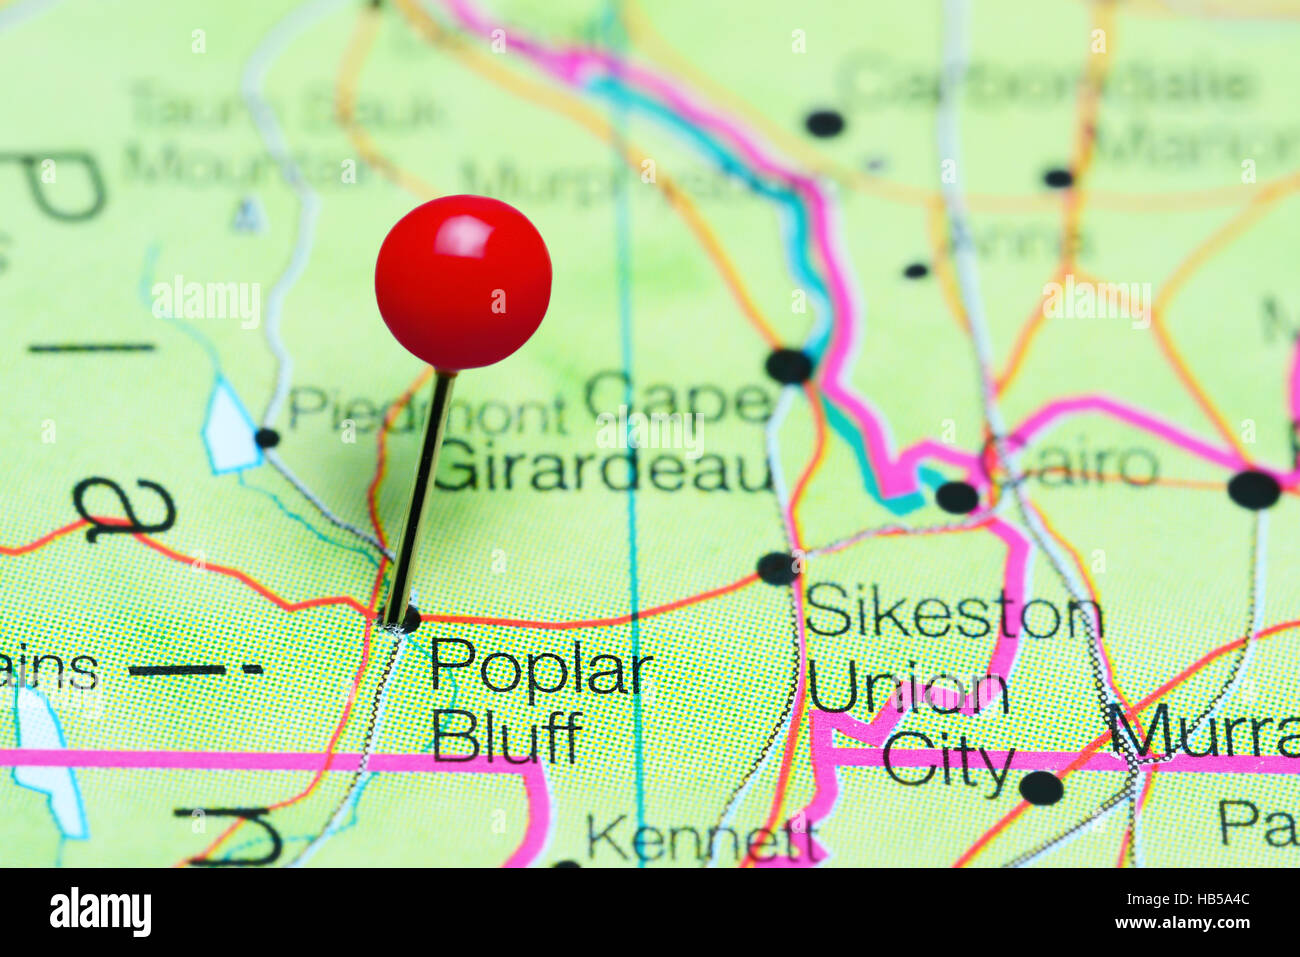 Poplar Bluff pinned on a map of Missouri, USA Stock Photo